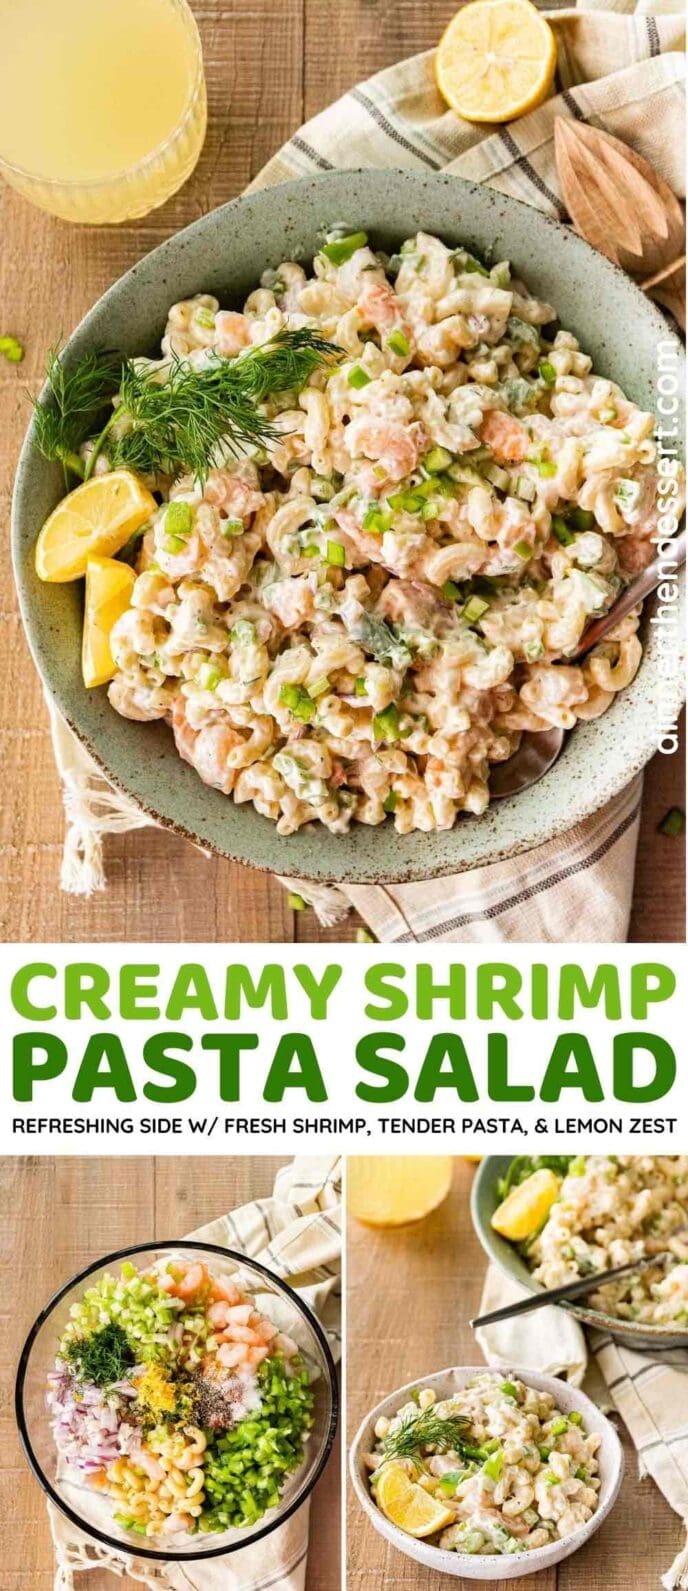 Shrimp Pasta Salad collage